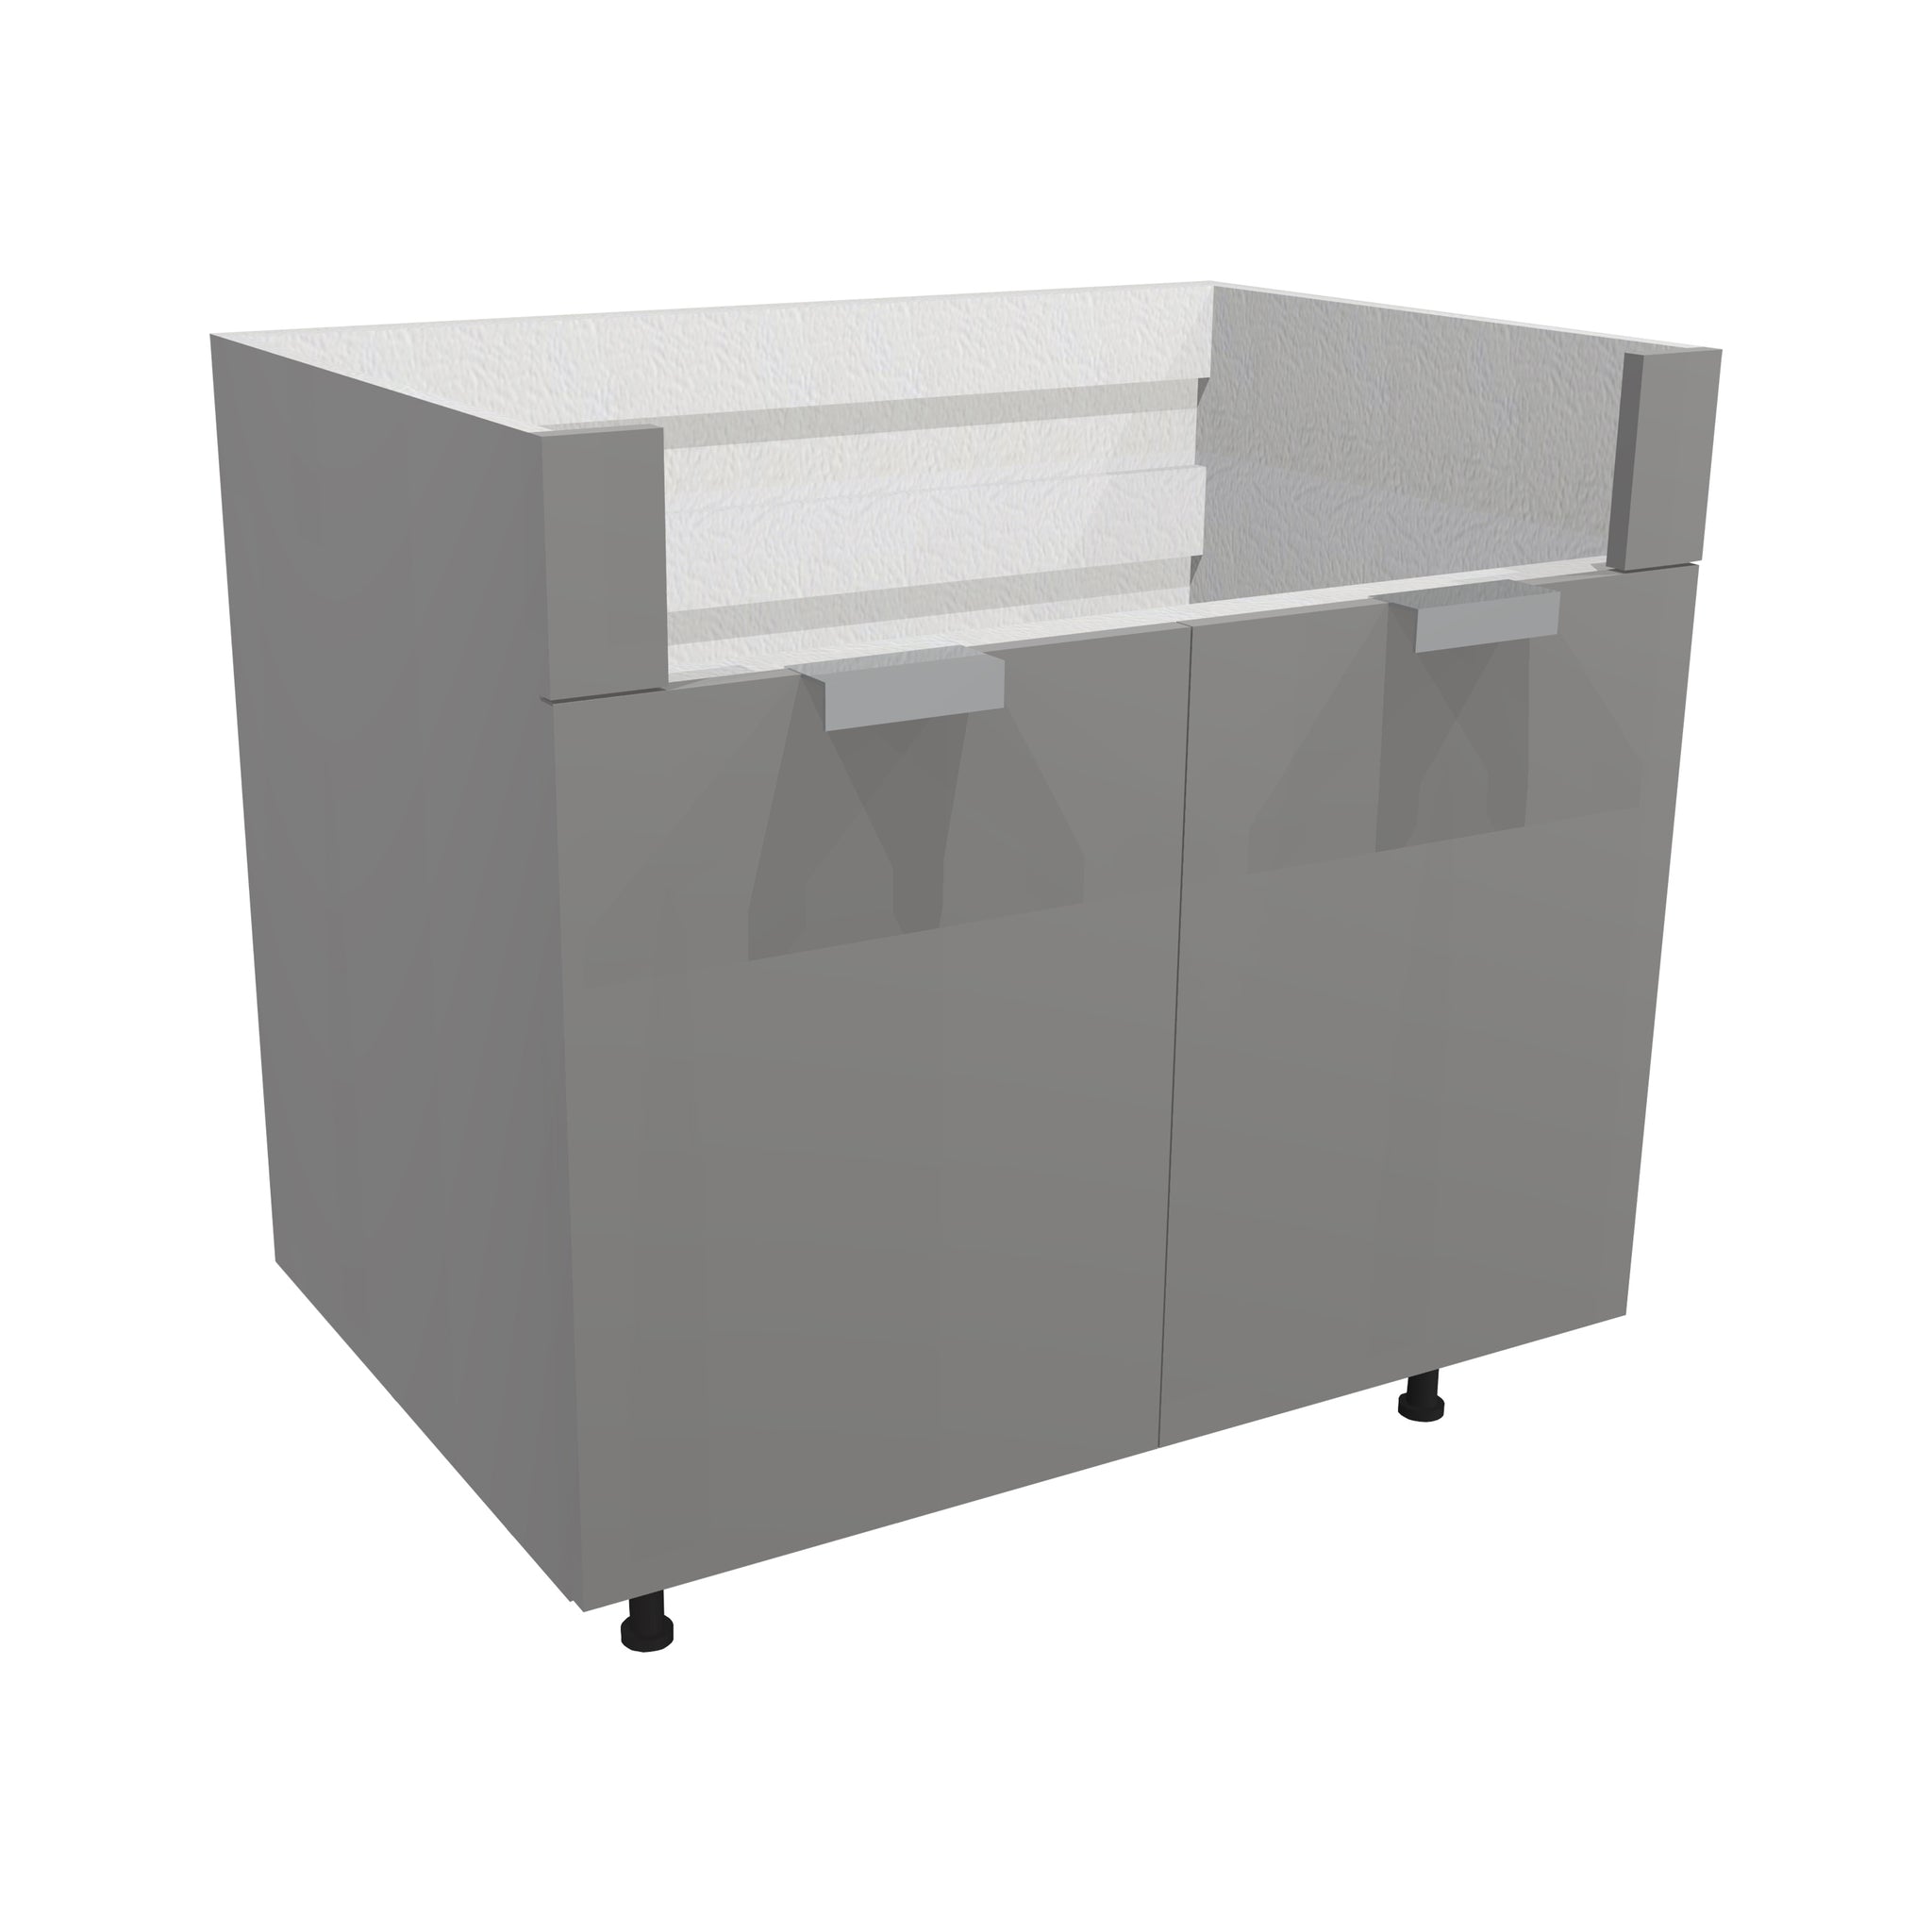 RTA - Glossy Grey - Farm Sink Base Cabinet | 30"W x 34.5"H x 24"D